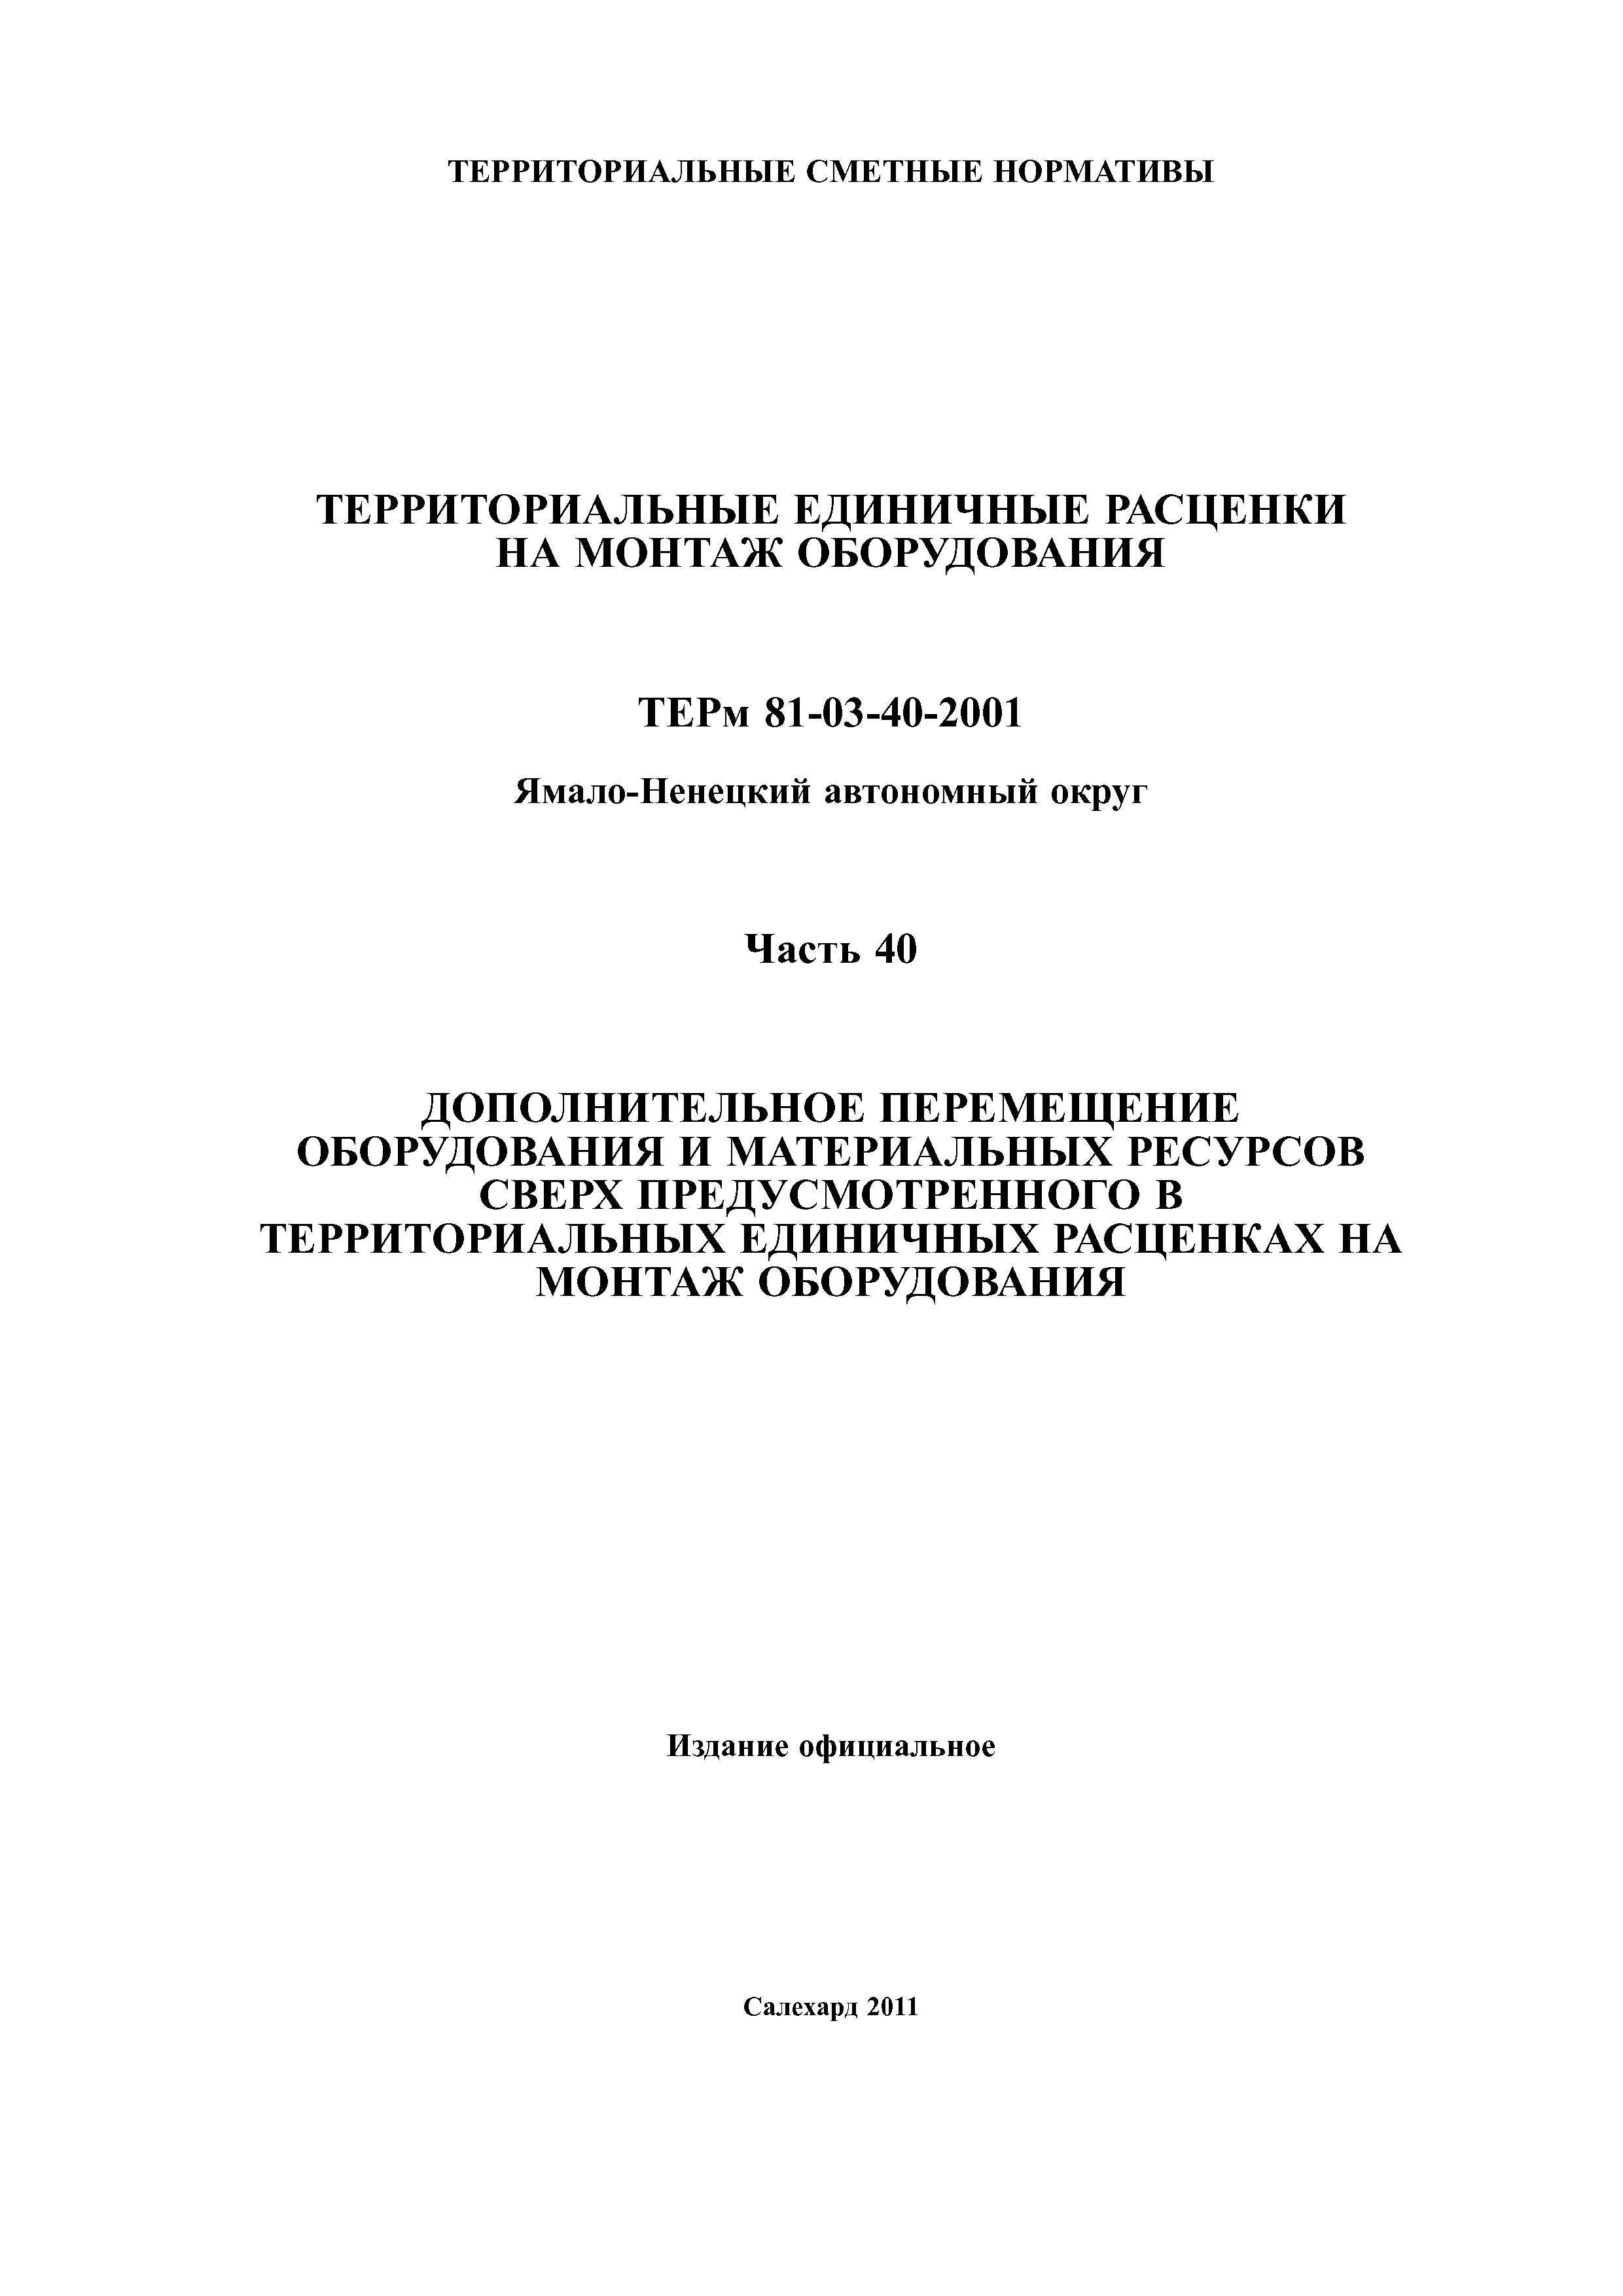 ТЕРм Ямало-Ненецкий автономный округ 40-2001